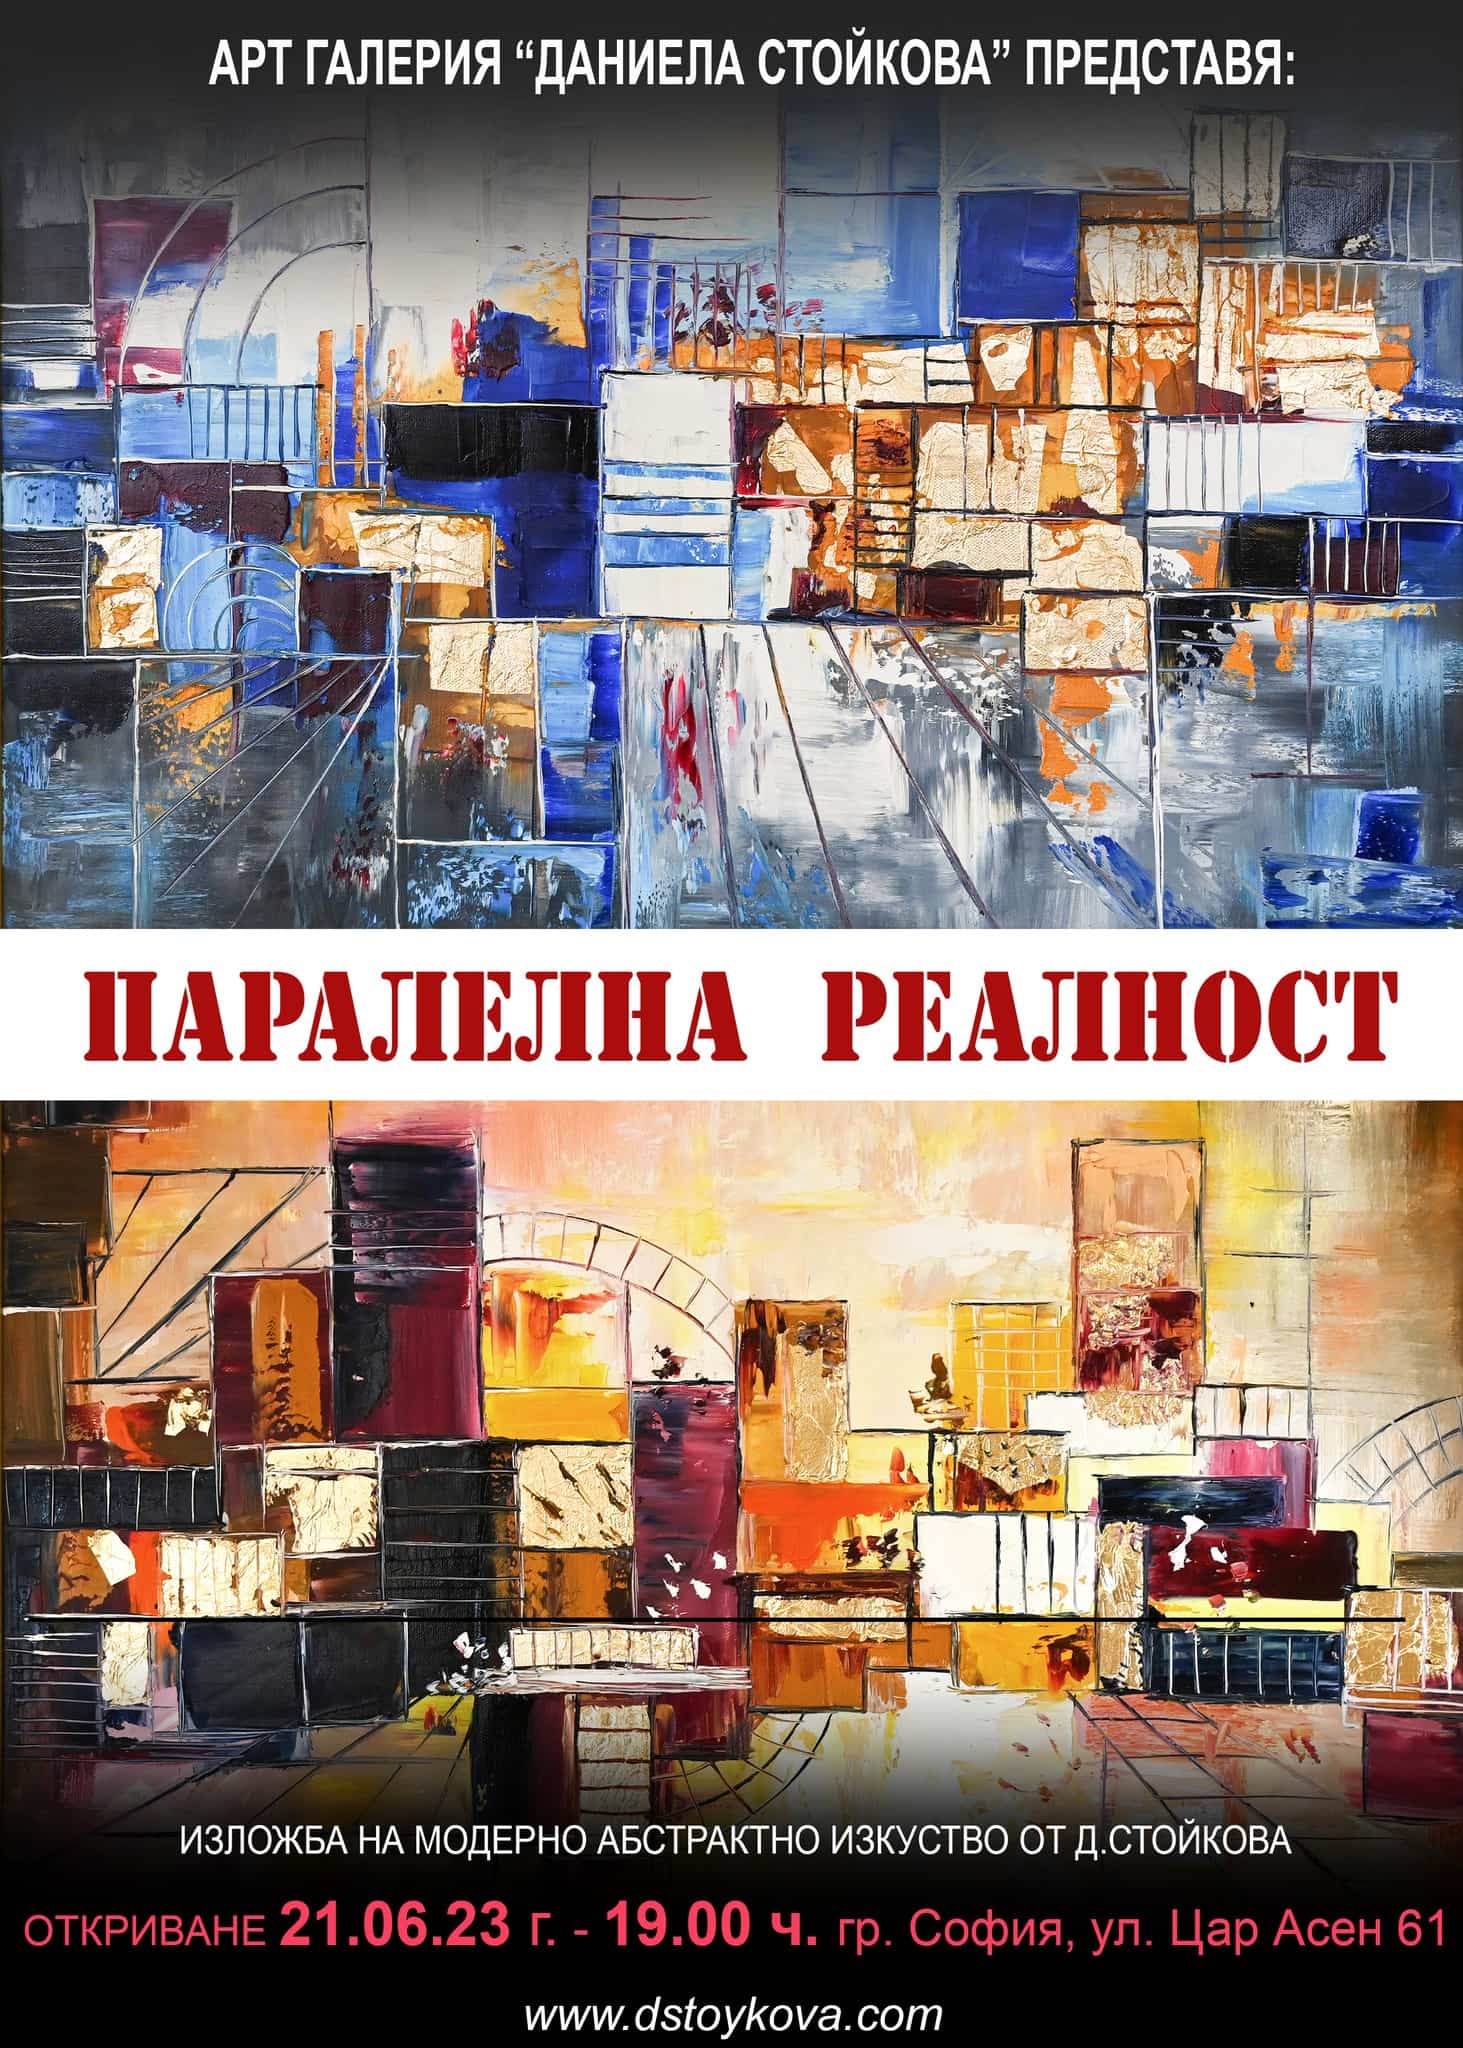 Изложба на модерни абстрактни картини от художник Даниела Стойкова!